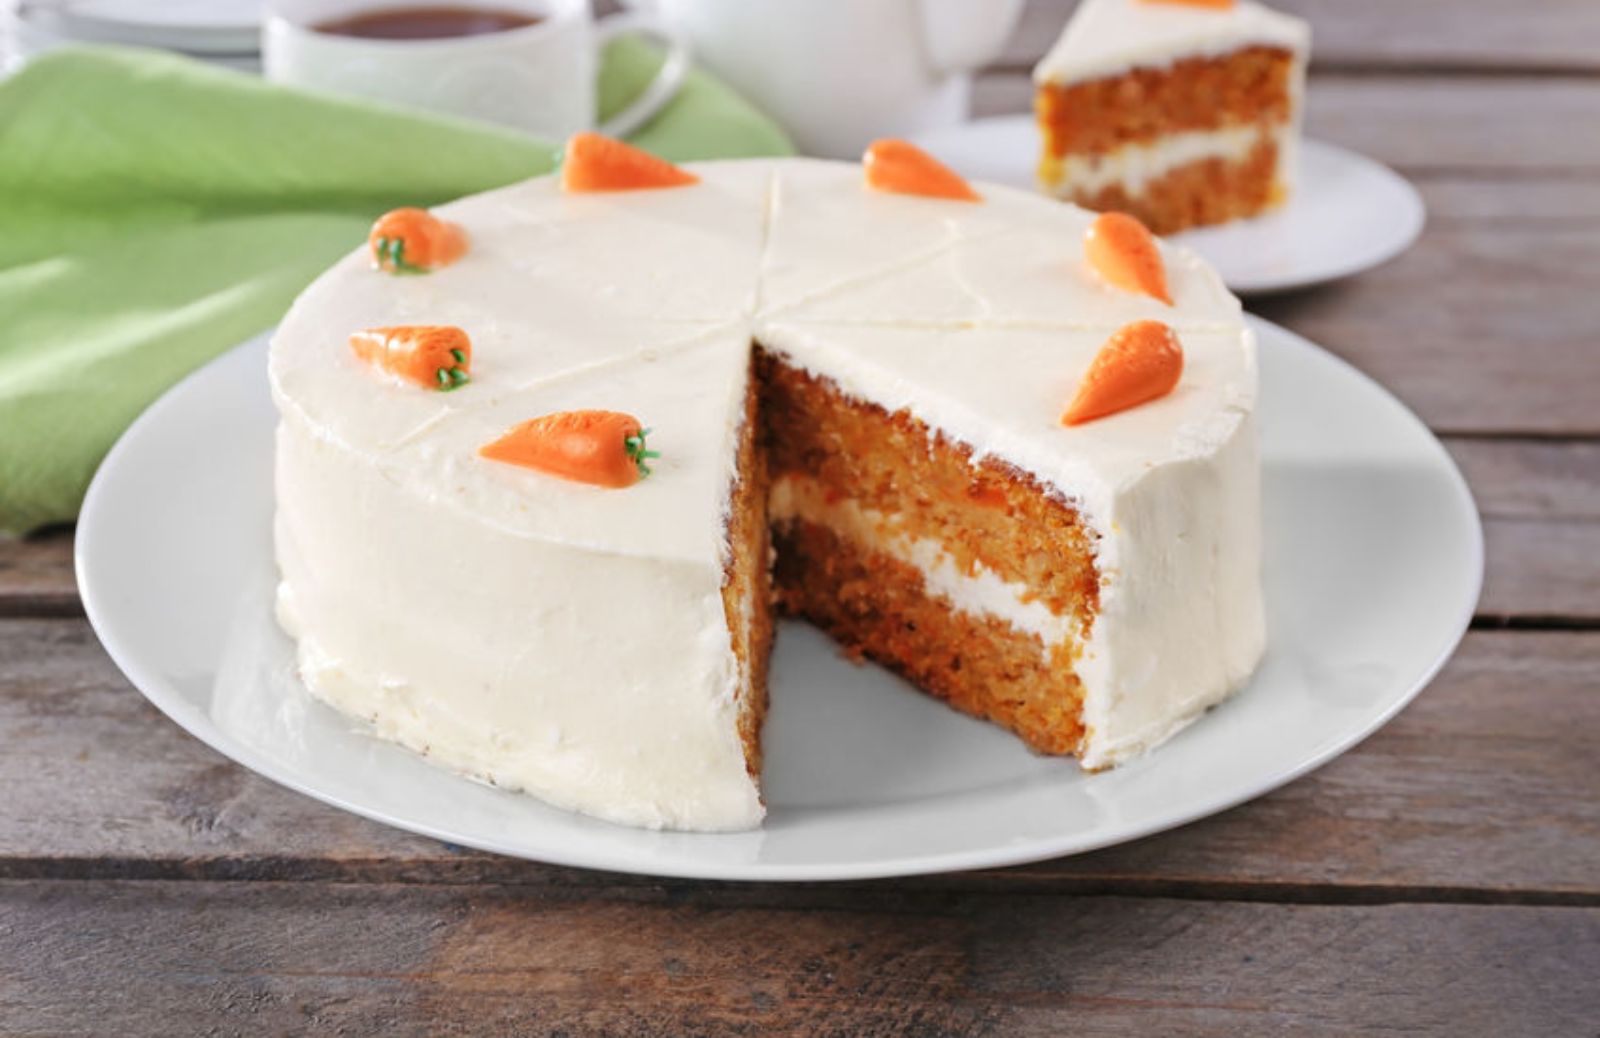 La ricetta della carrot cake: la torta di carote americana, facile e irresistibile